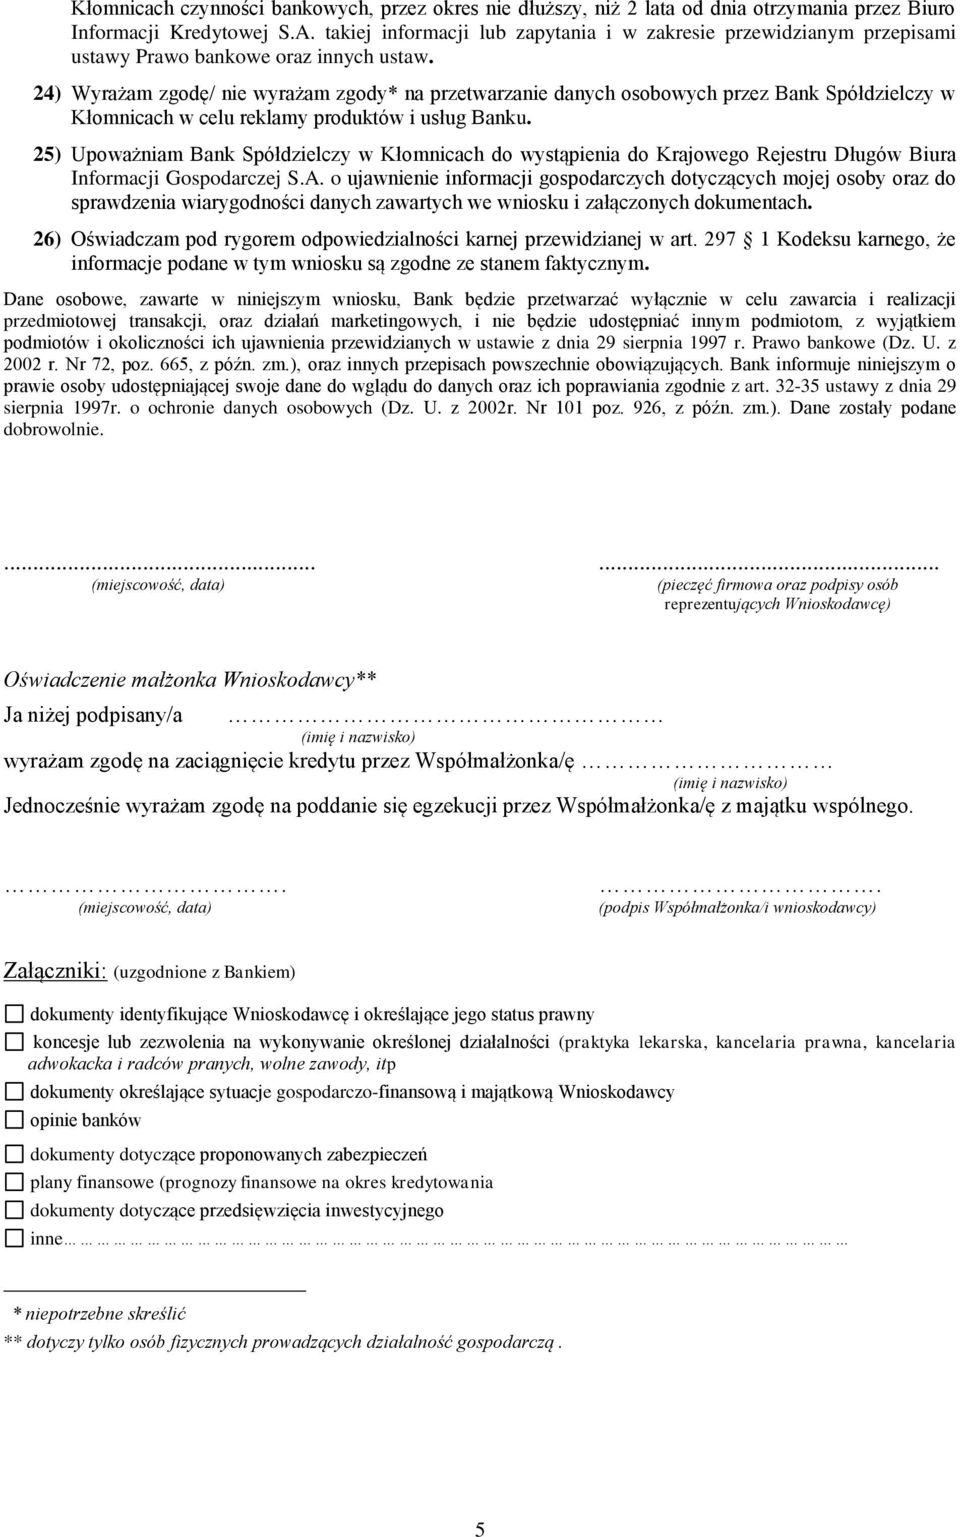 24) Wyrażam zgodę/ nie wyrażam zgody* na przetwarzanie danych osobowych przez Bank Spółdzielczy w Kłomnicach w celu reklamy produktów i usług Banku.